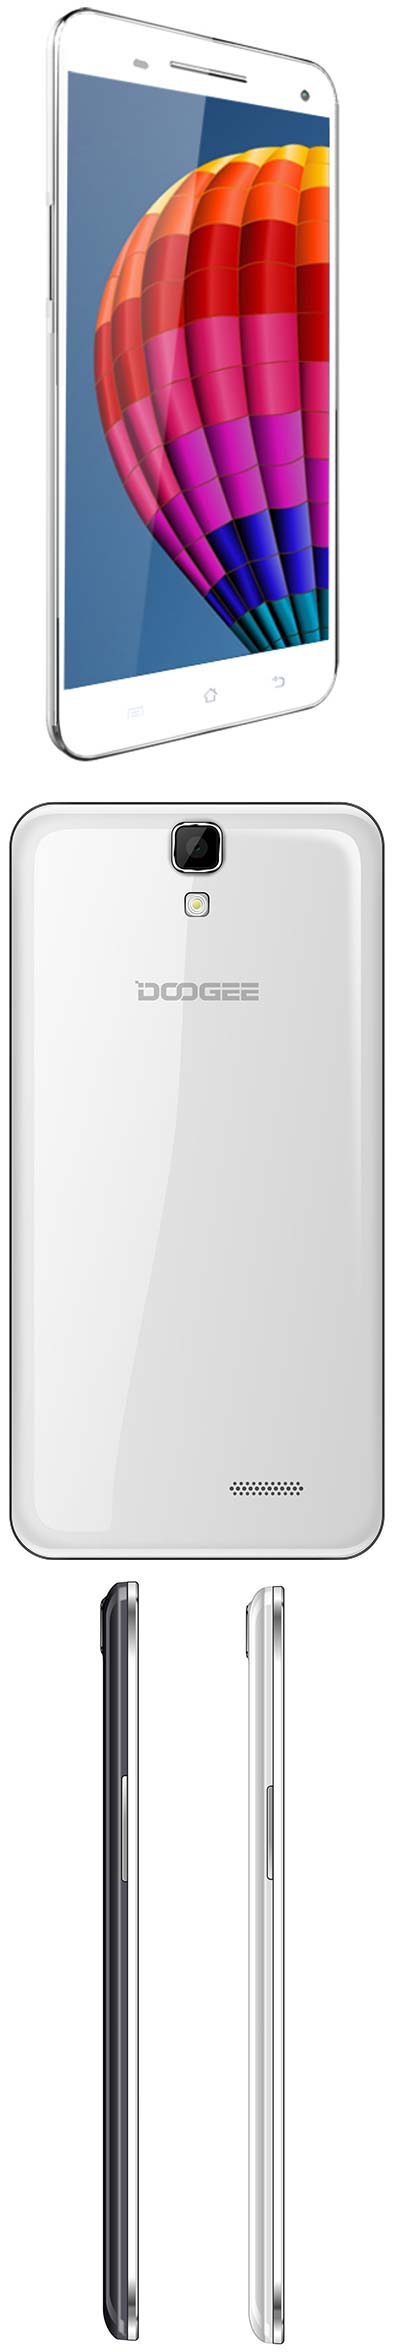 Фаблет Doogee Max DG650s